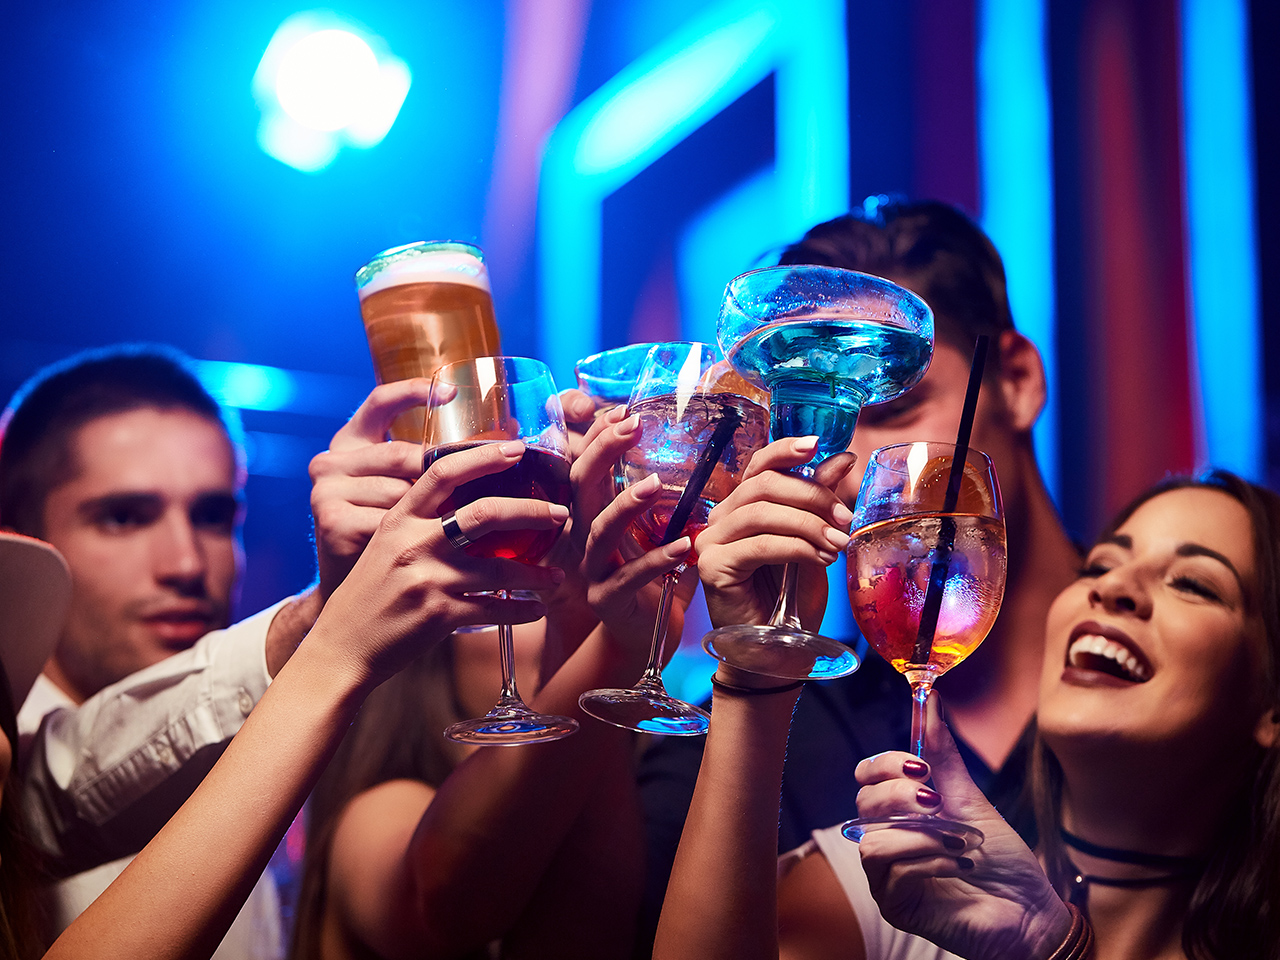 ALERT! Boozing may harm men more than women